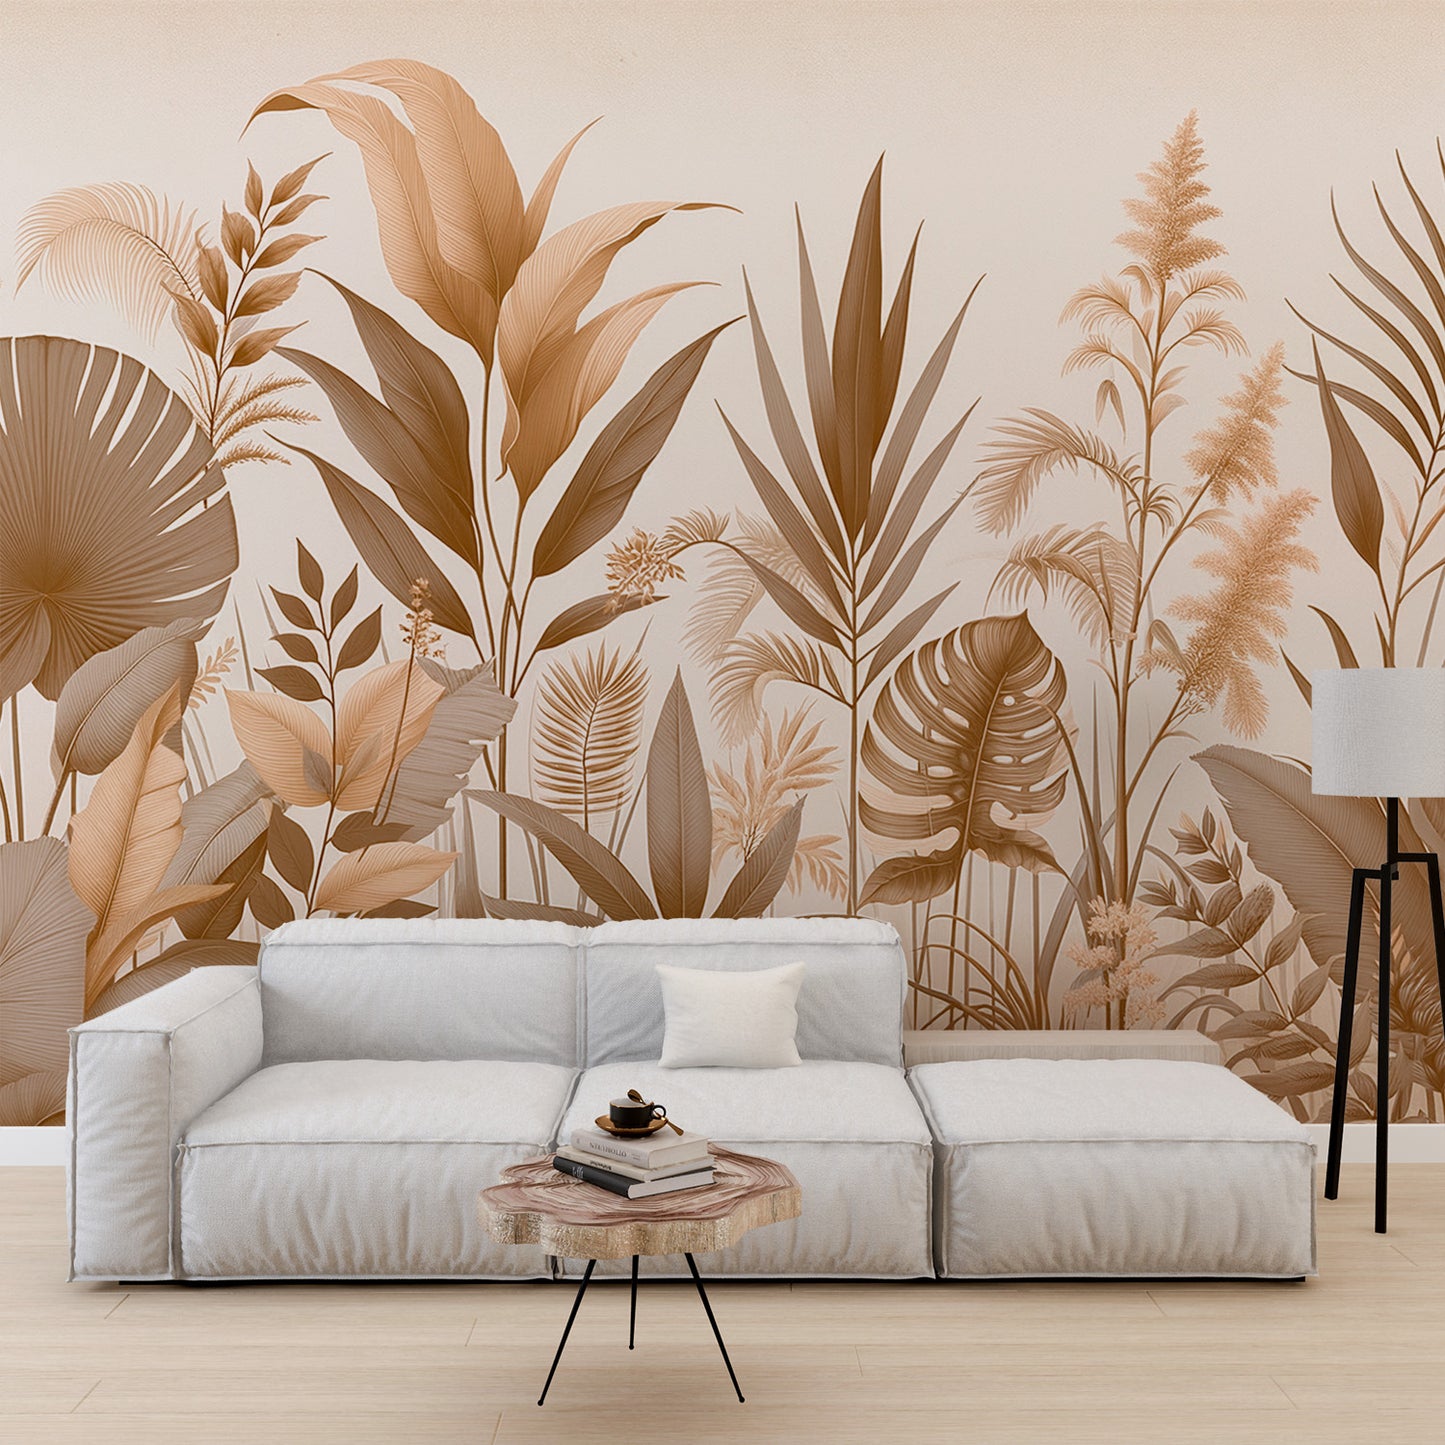 Papier peint jungle beige | Exotisme ultime